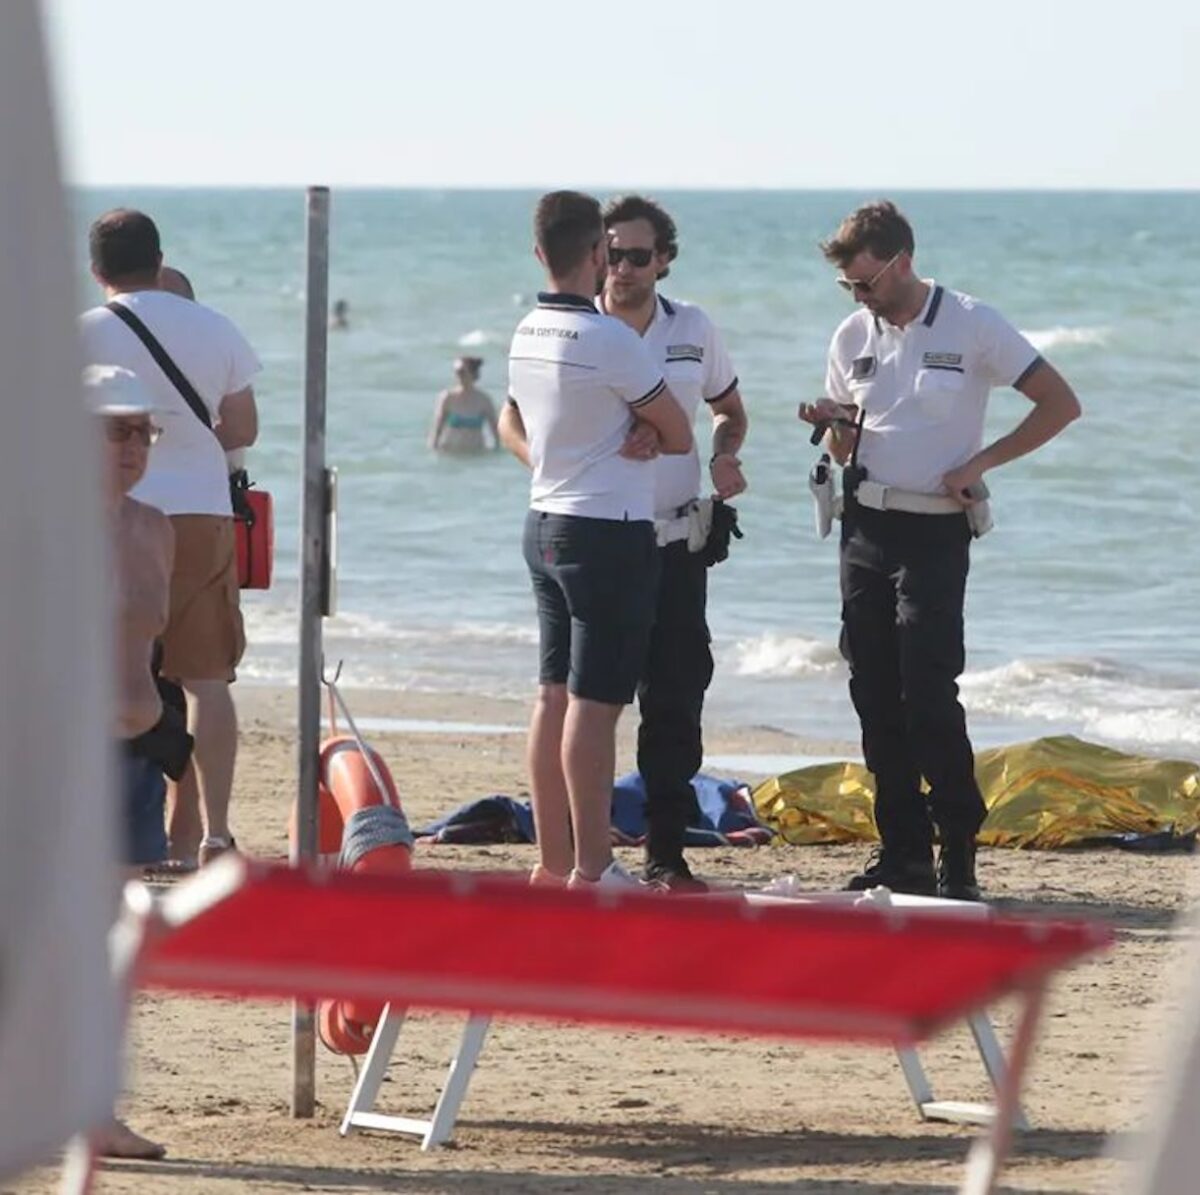 Turista si accascia in acqua e muore, dramma spiaggia italiana